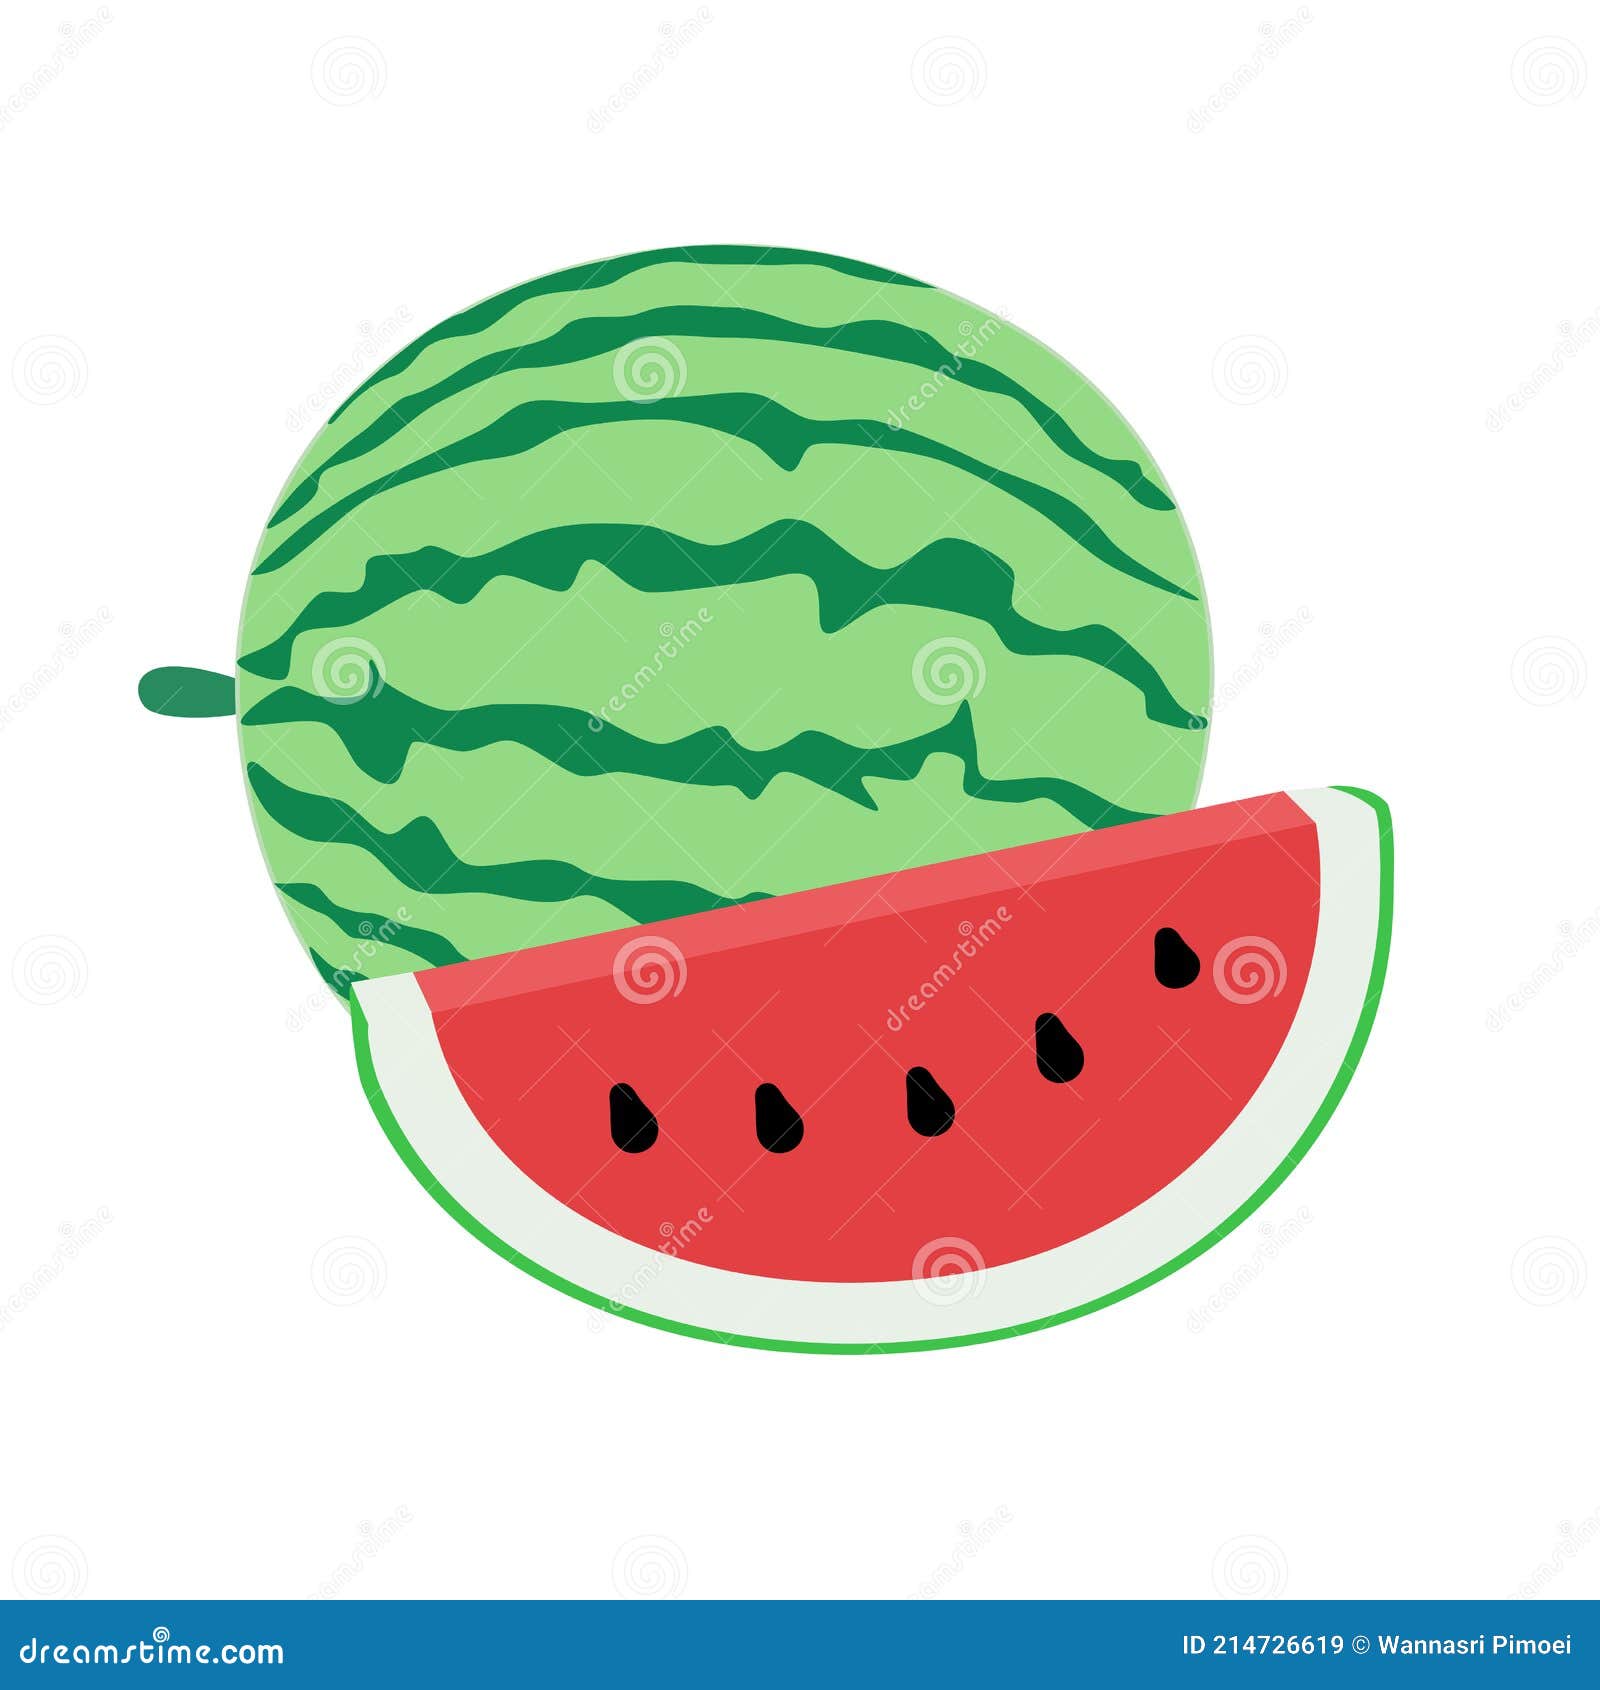 Eaten Watermelon Stock Illustrations – 53 Eaten Watermelon Stock  Illustrations, Vectors & Clipart - Dreamstime